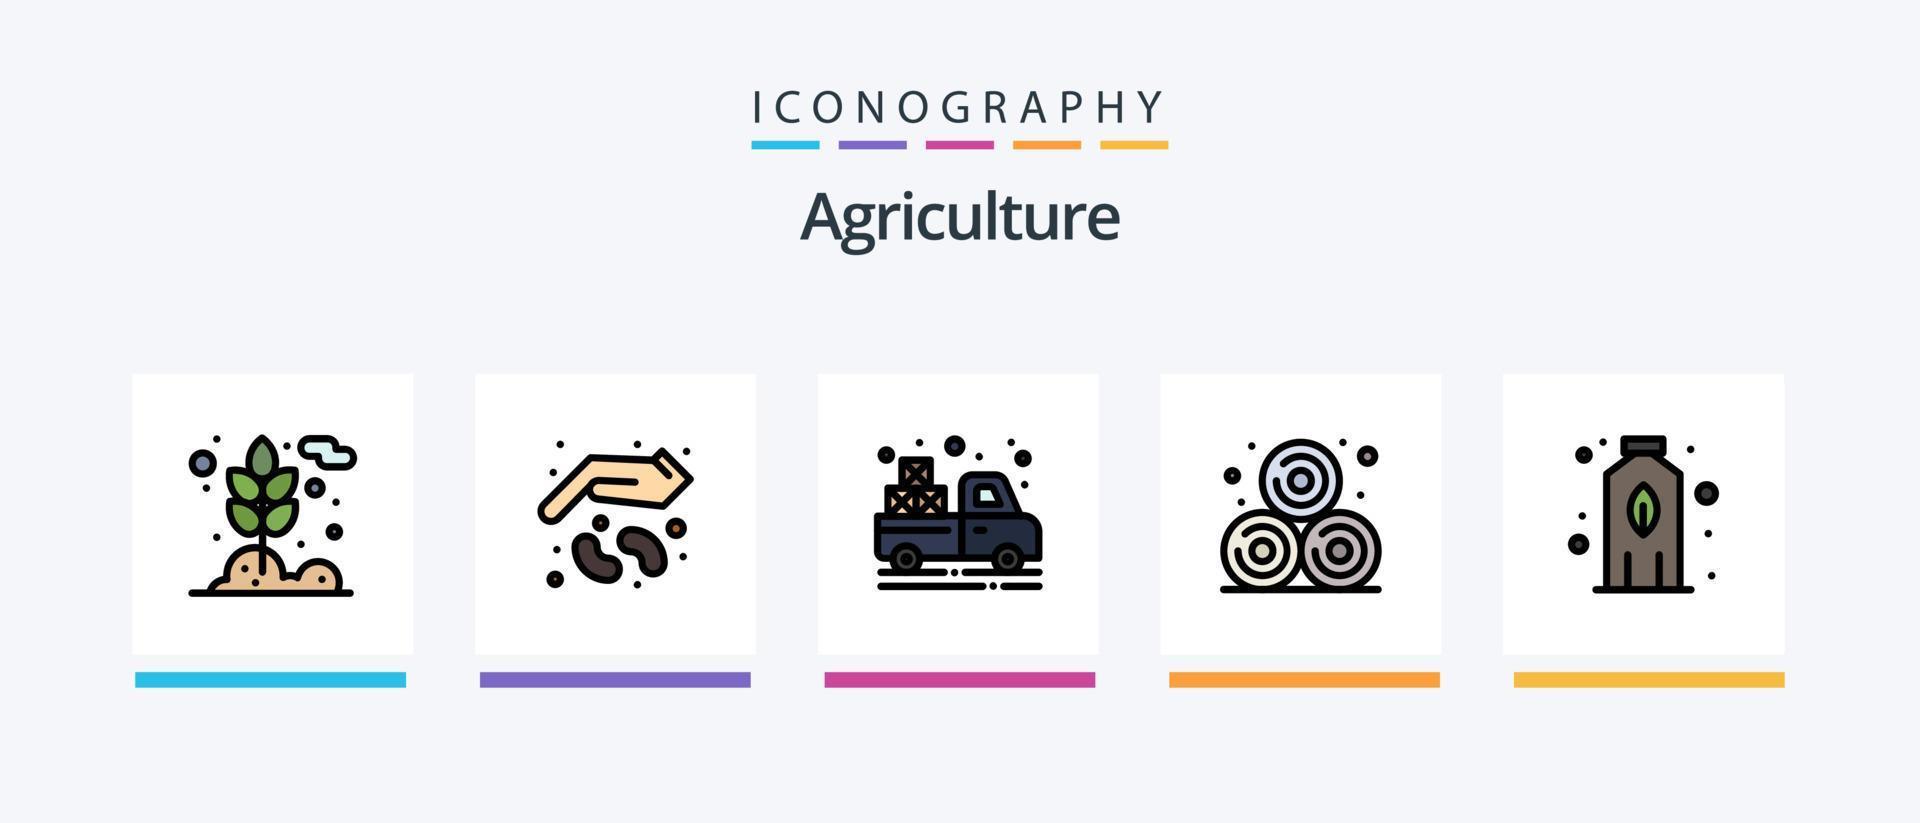 linha de agricultura cheia de 5 ícones, incluindo agricultura. comida. abelha. fazenda. agricultura. design de ícones criativos vetor